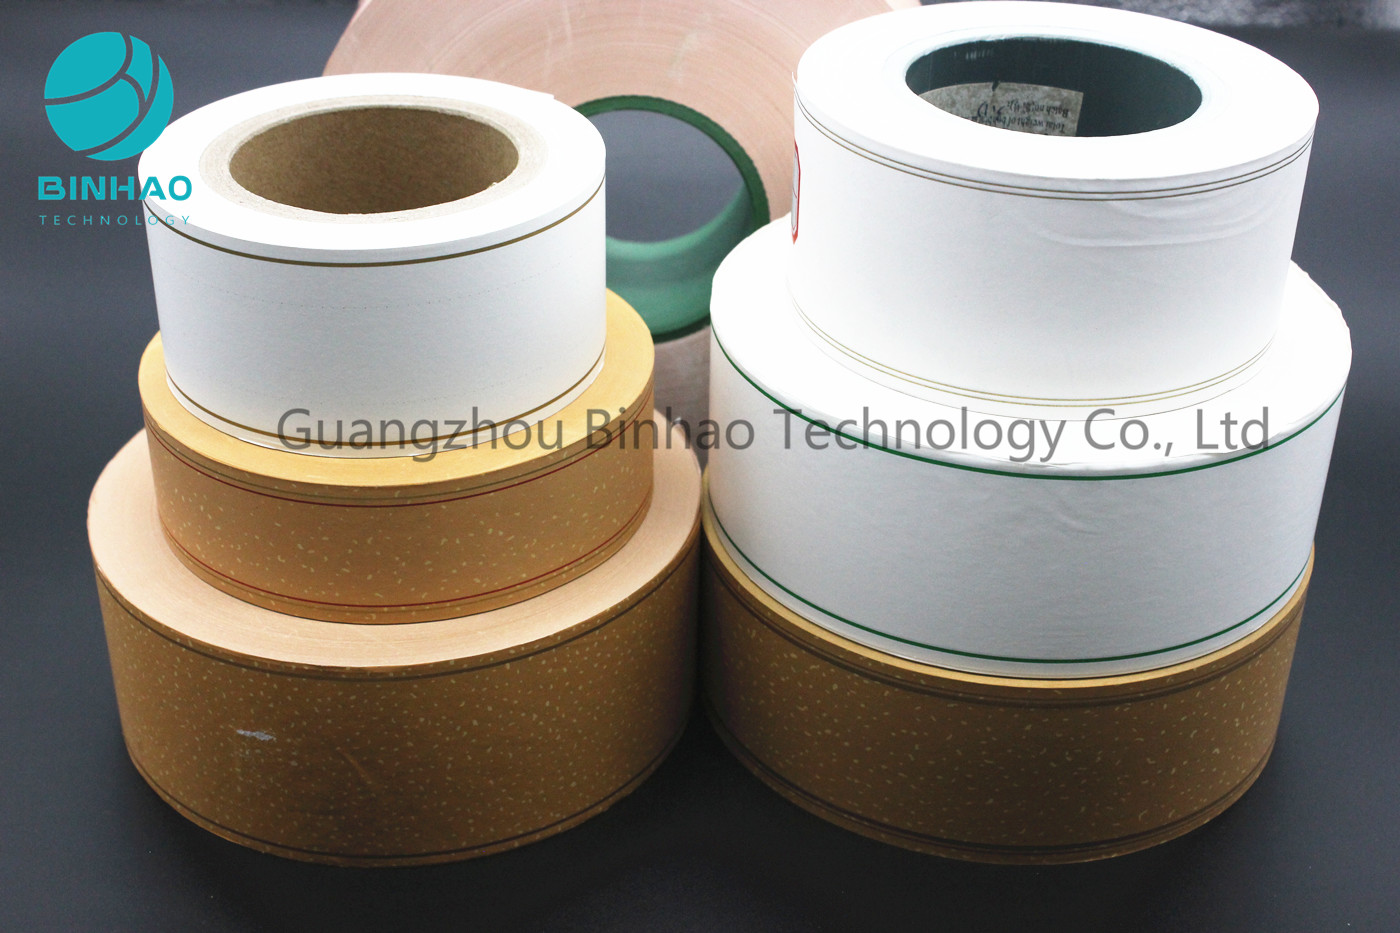 Cig-/Tabak-Filterpapier-Pearlized heiße stempelnde Druckperforierungs-glatte Oberfläche, die Papier spitzt